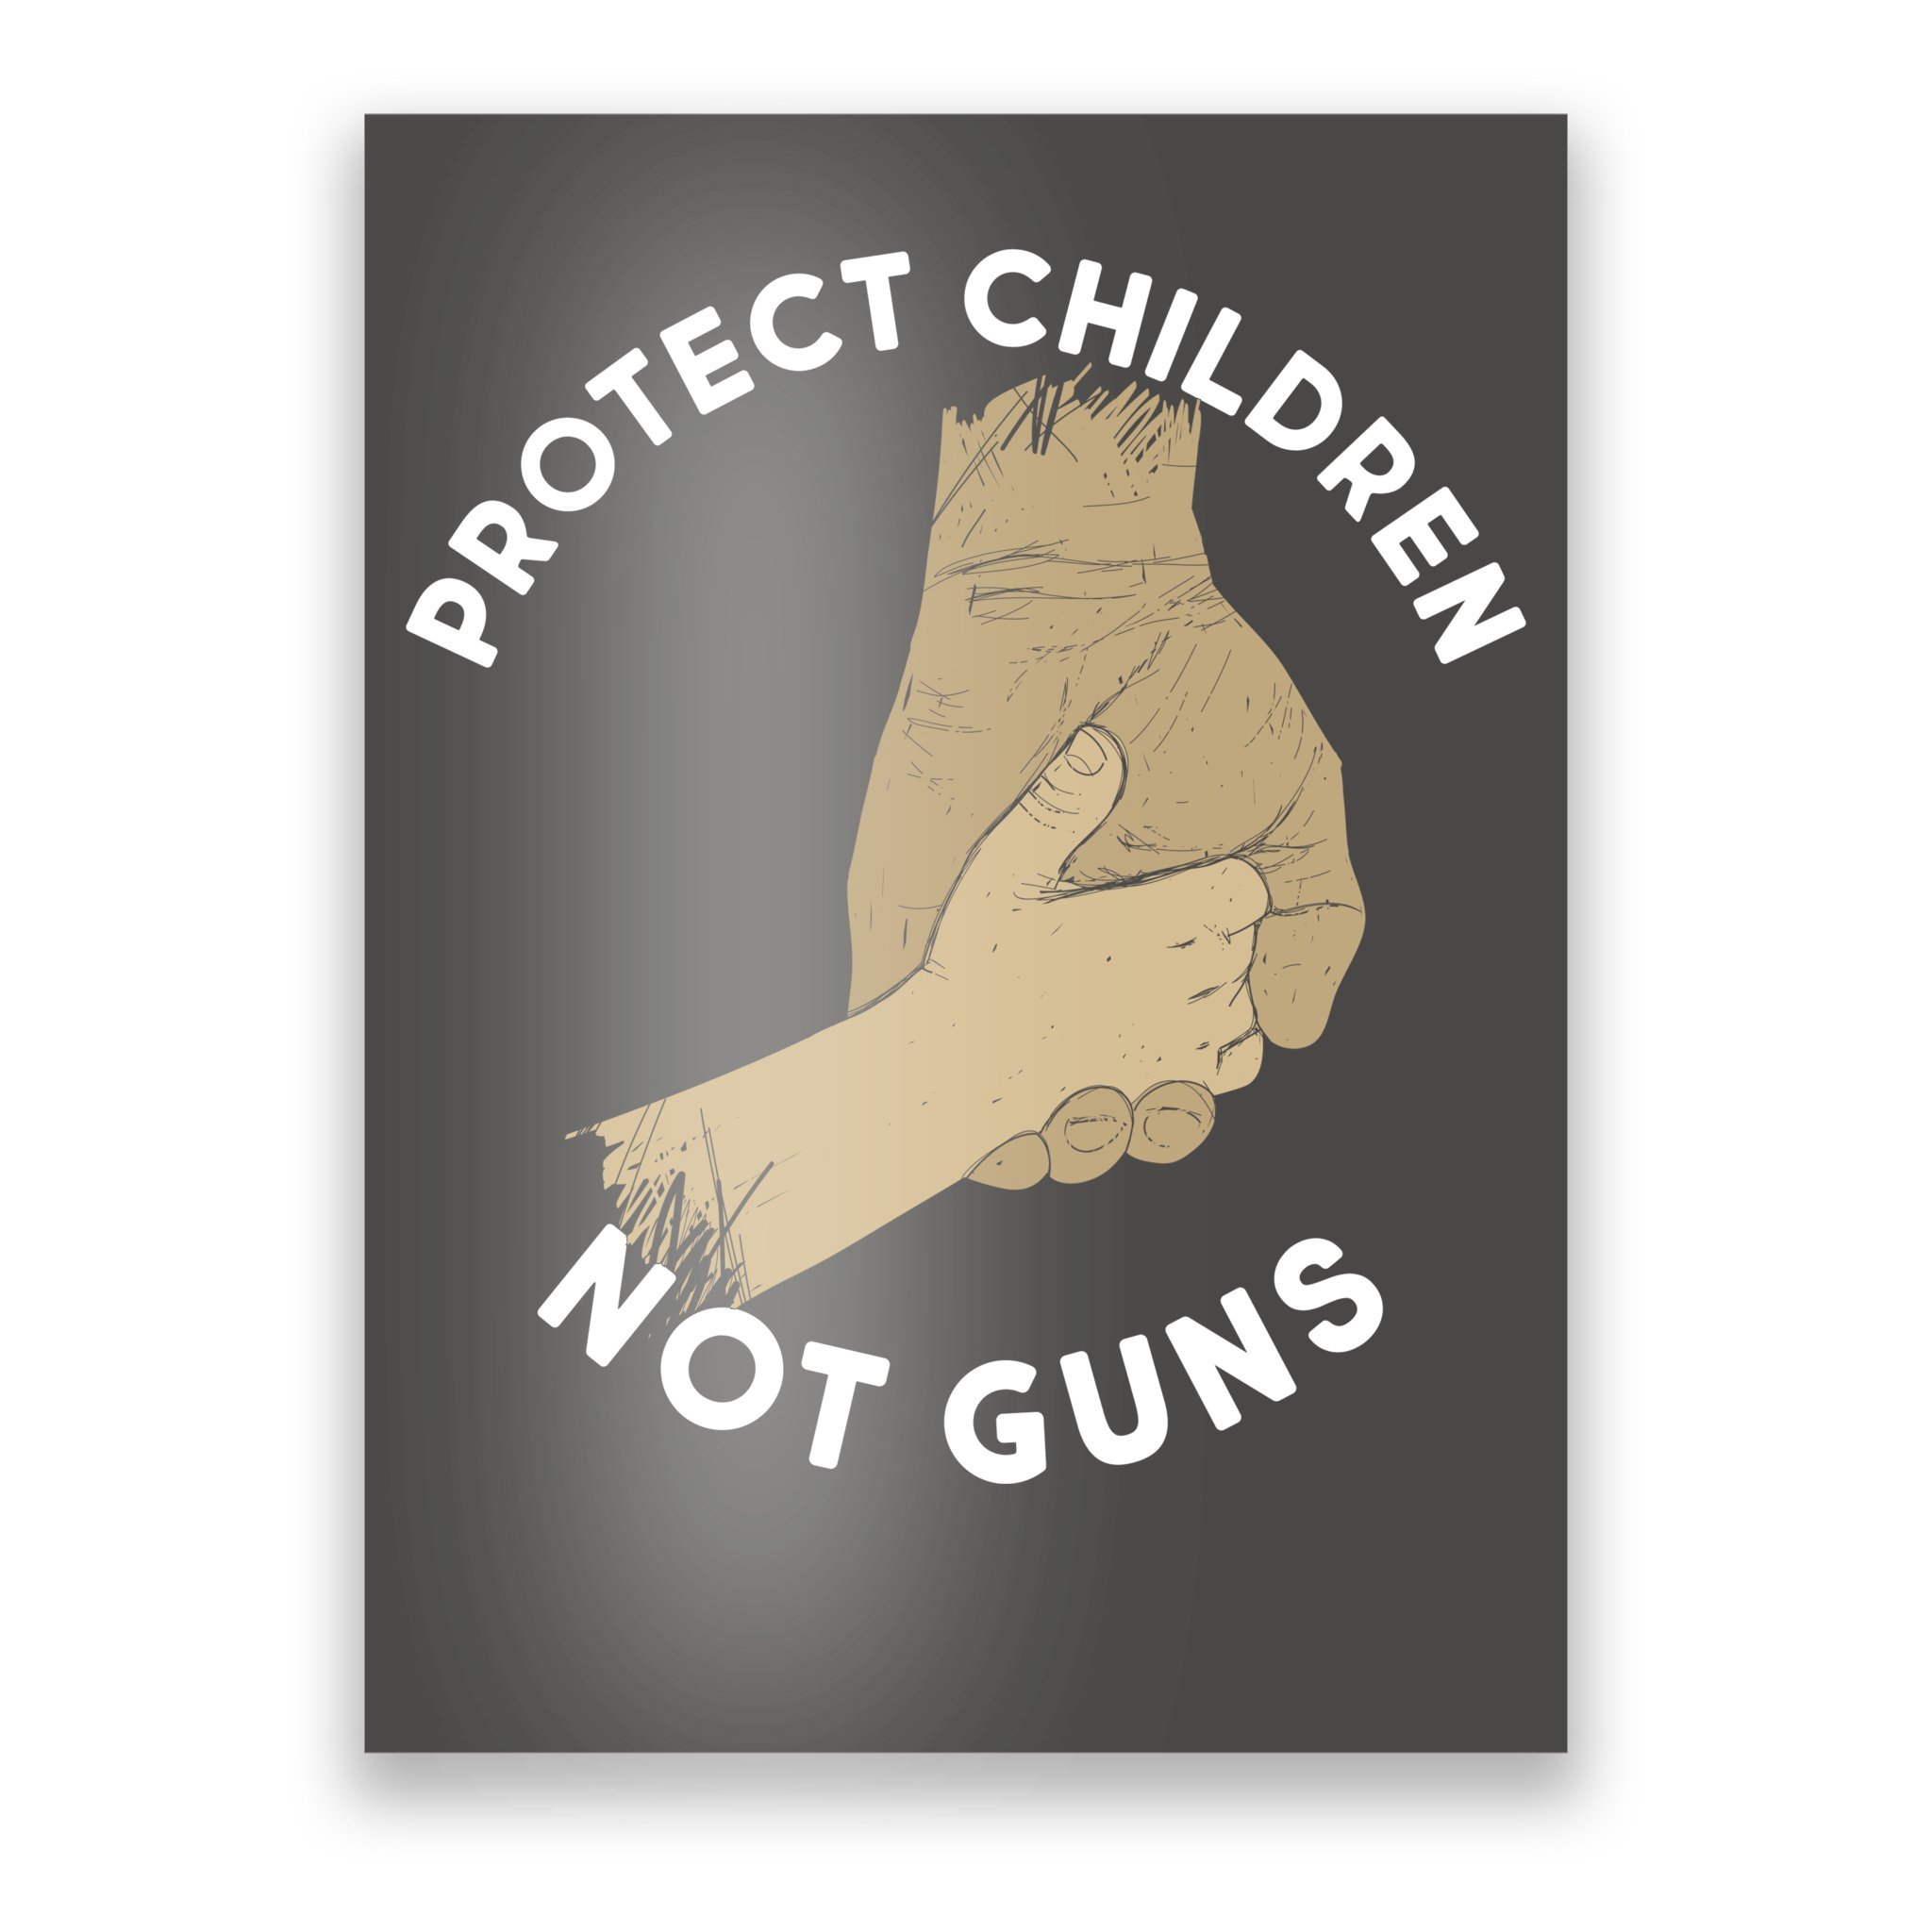 protect children not guns